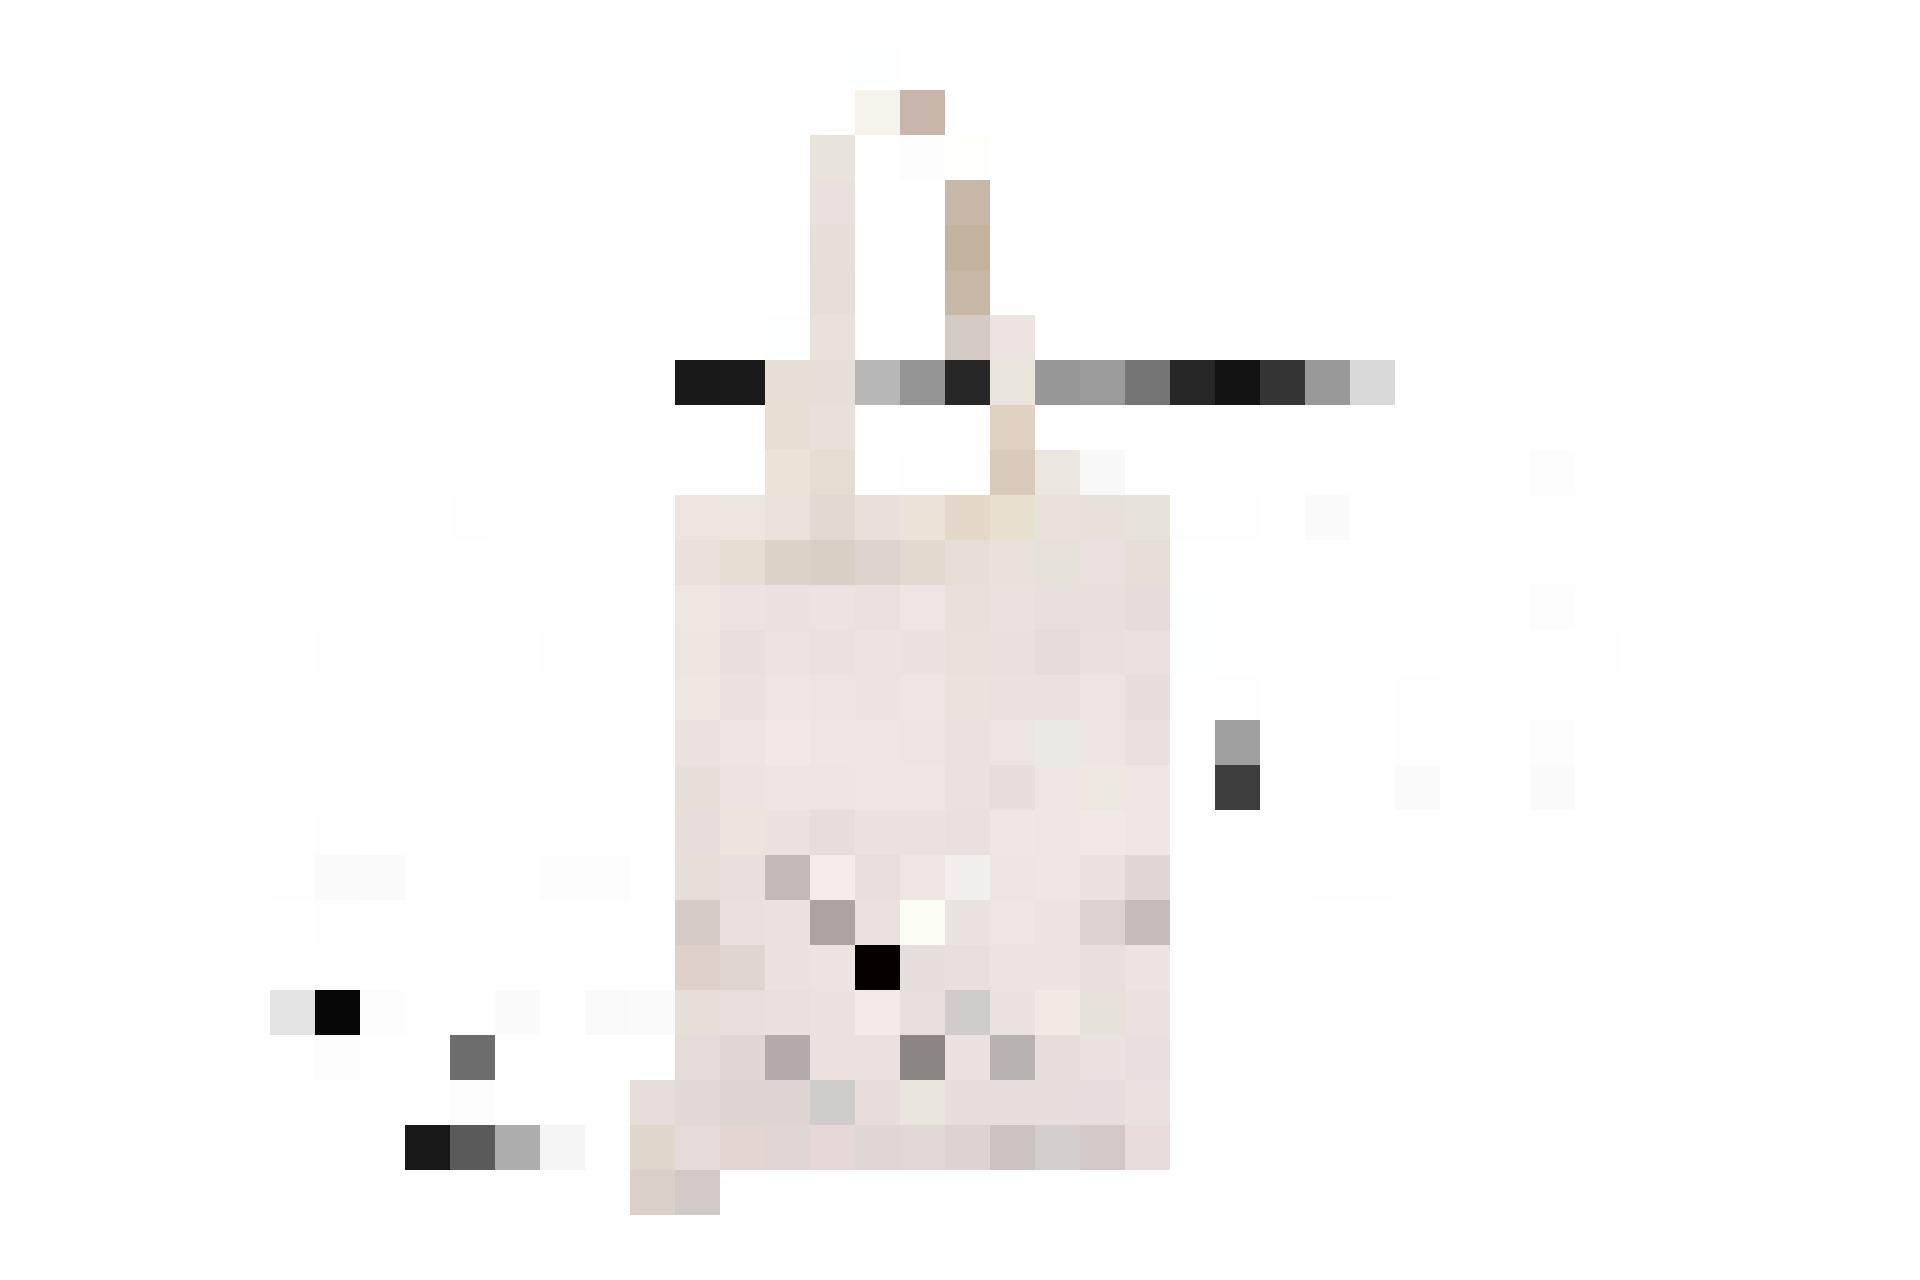 Lama sottobraccio: borsa in cotone con stampa lama, 20 × 25 cm, fr. 5.95, da Jumbo.